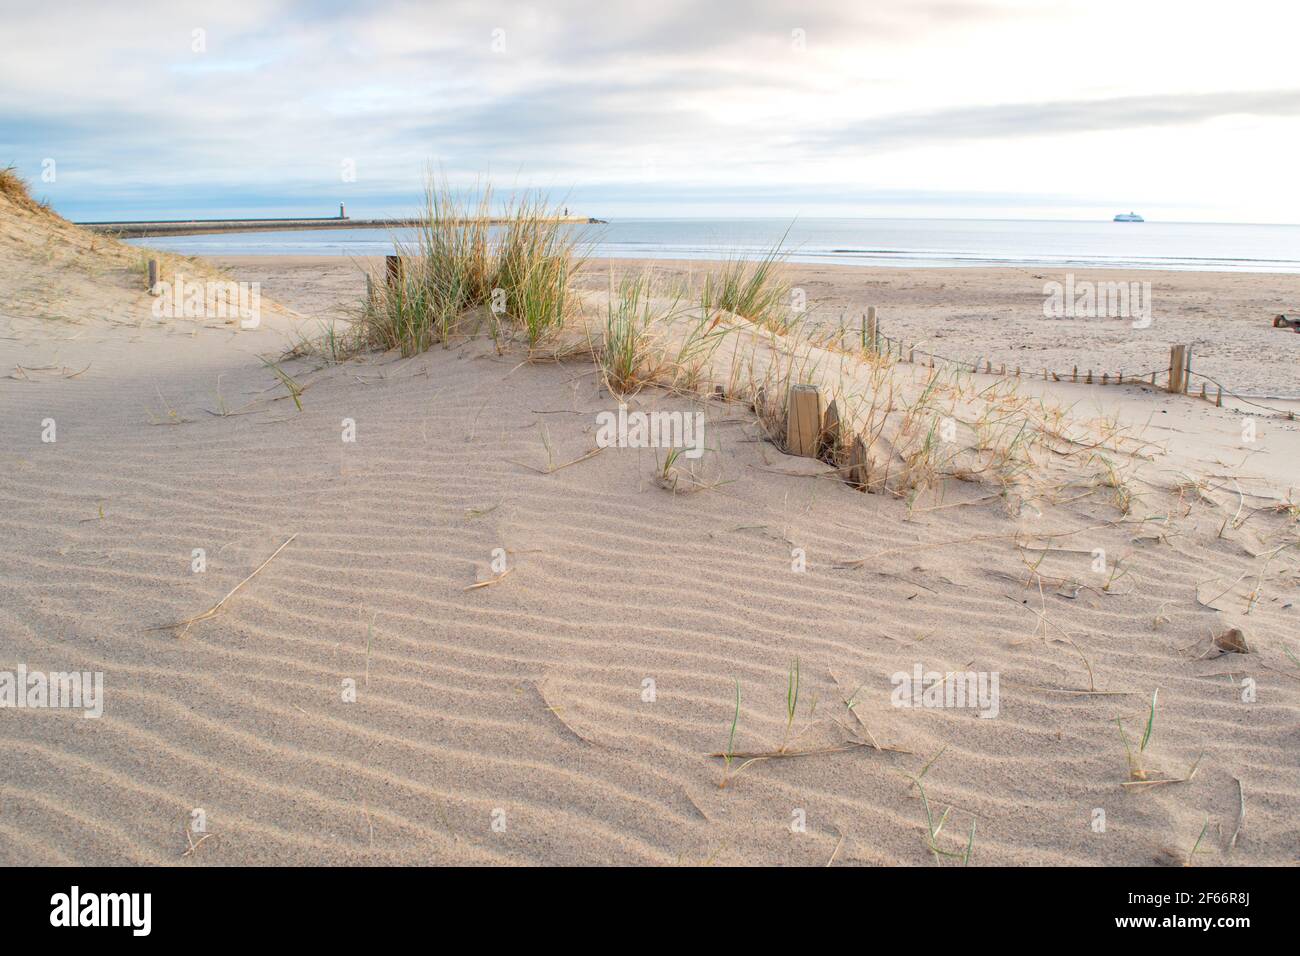 Die sandige Küste am South Shields Beach, einer Küstenstadt in der Nähe von Newcastle upon Tyne im Nordosten Englands. Stockfoto